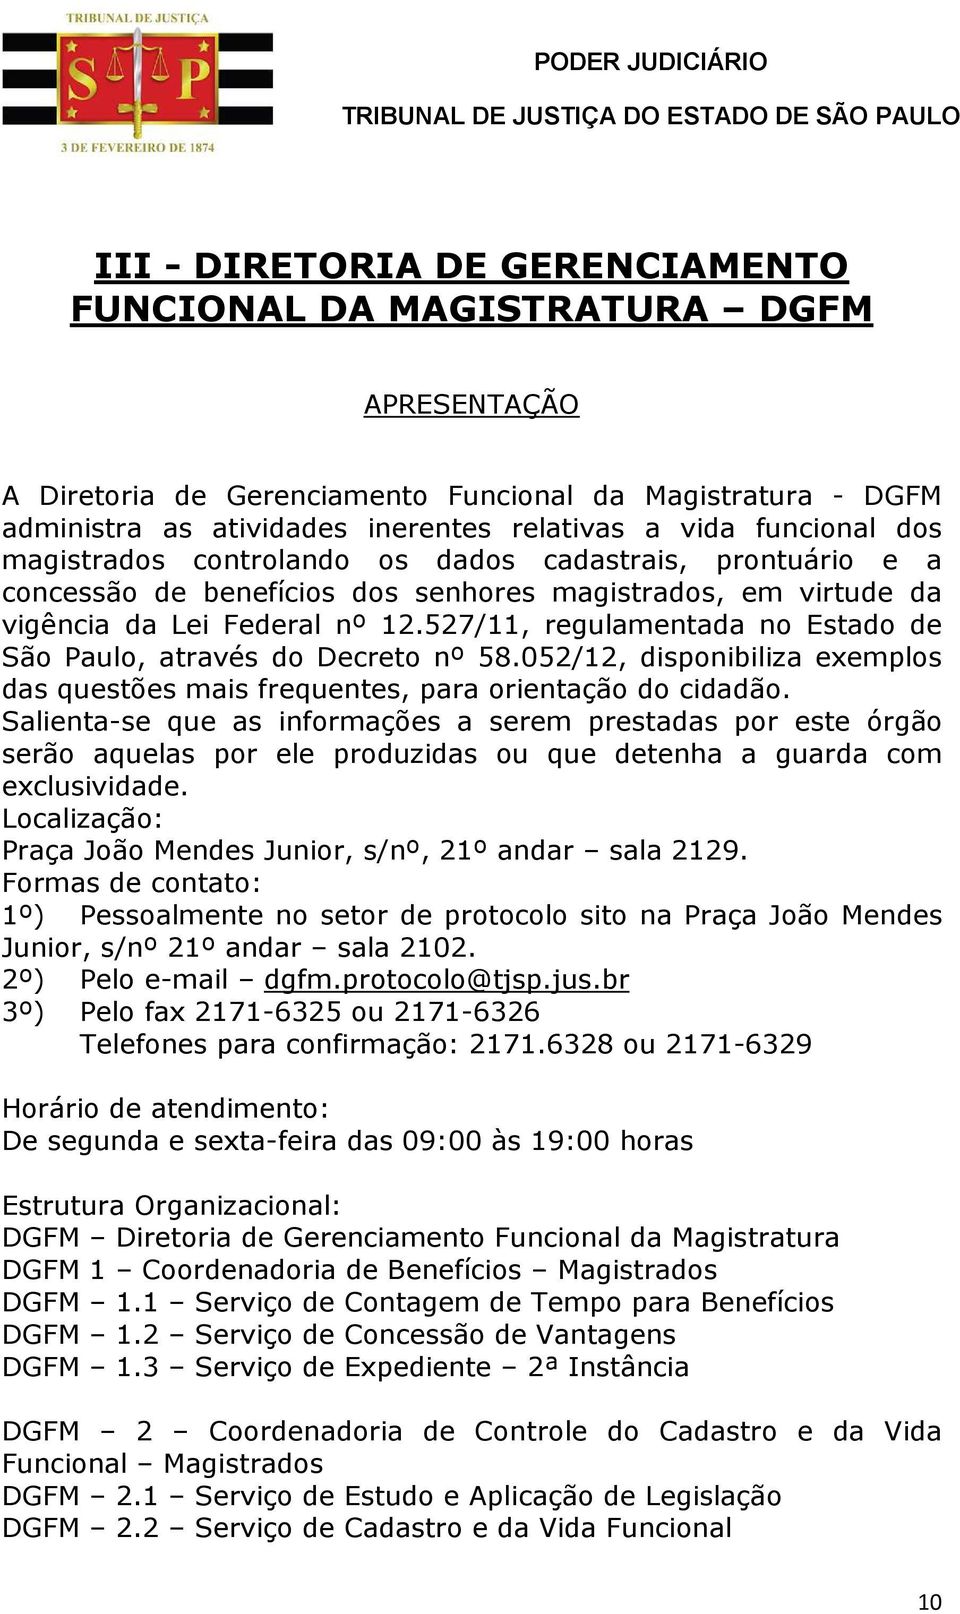 527/11, regulamentada no Estado de São Paulo, através do Decreto nº 58.052/12, disponibiliza exemplos das questões mais frequentes, para orientação do cidadão.